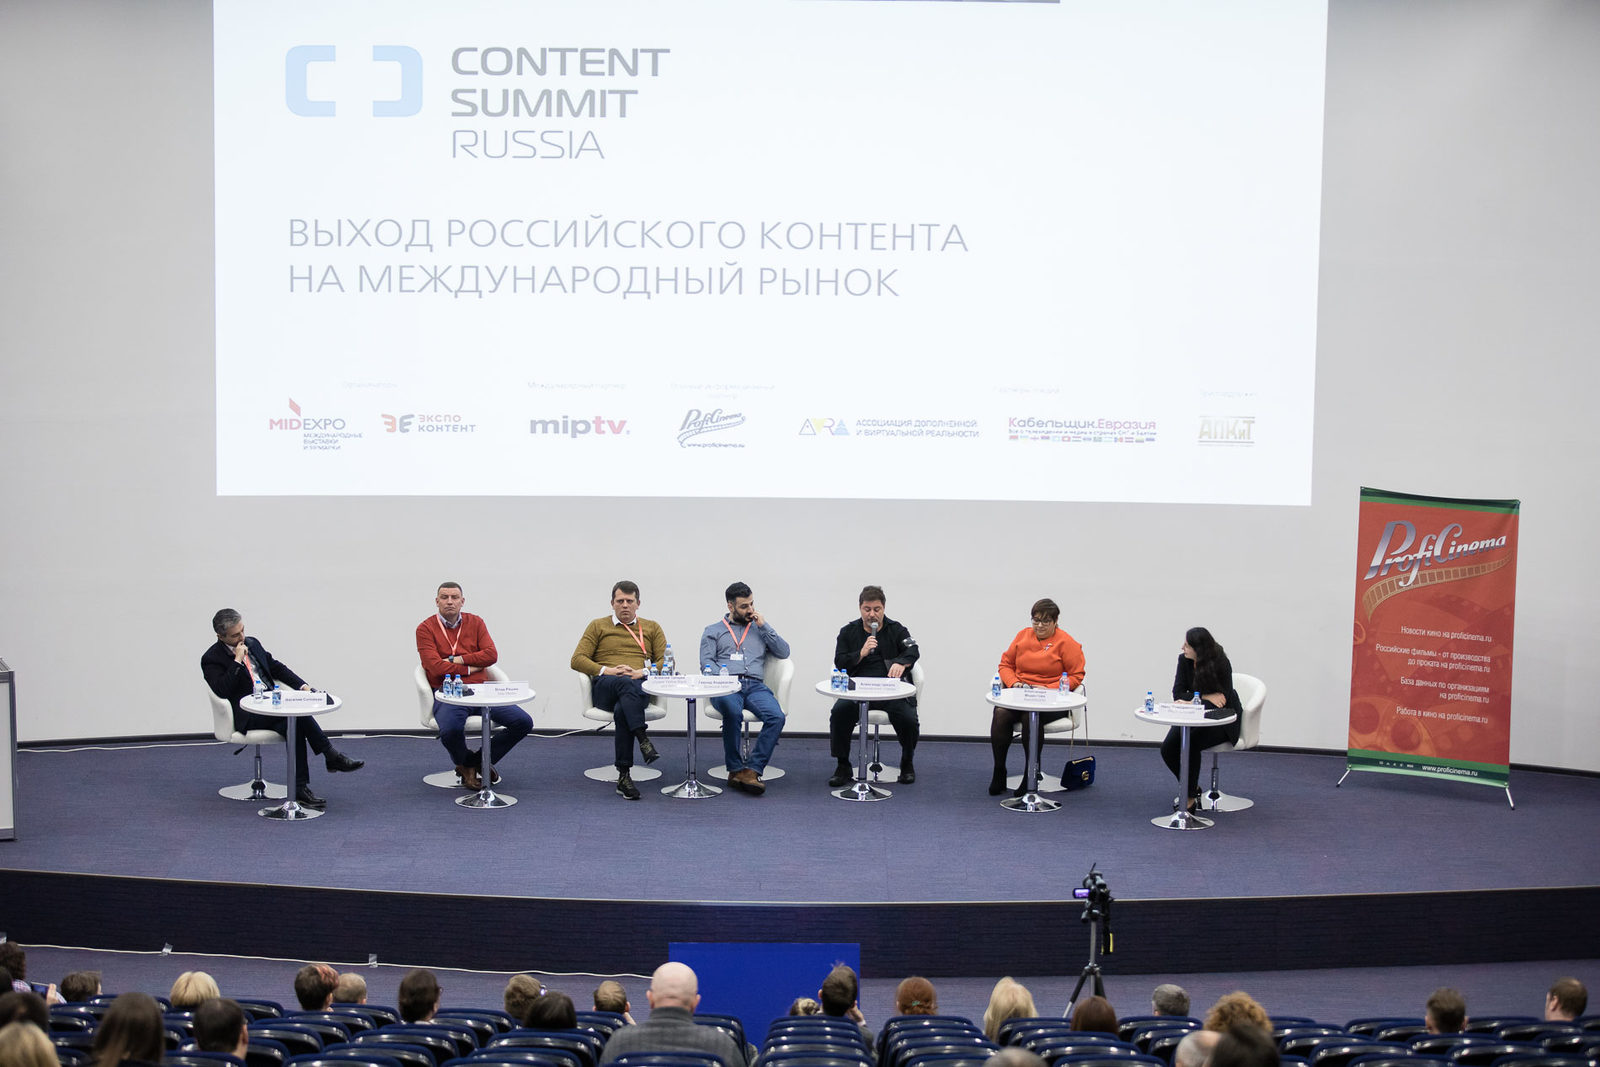 Сергей Сельянов и Фёдор Бондарчук обсудили актуальные вопросы производства ТВ- и киноконтента